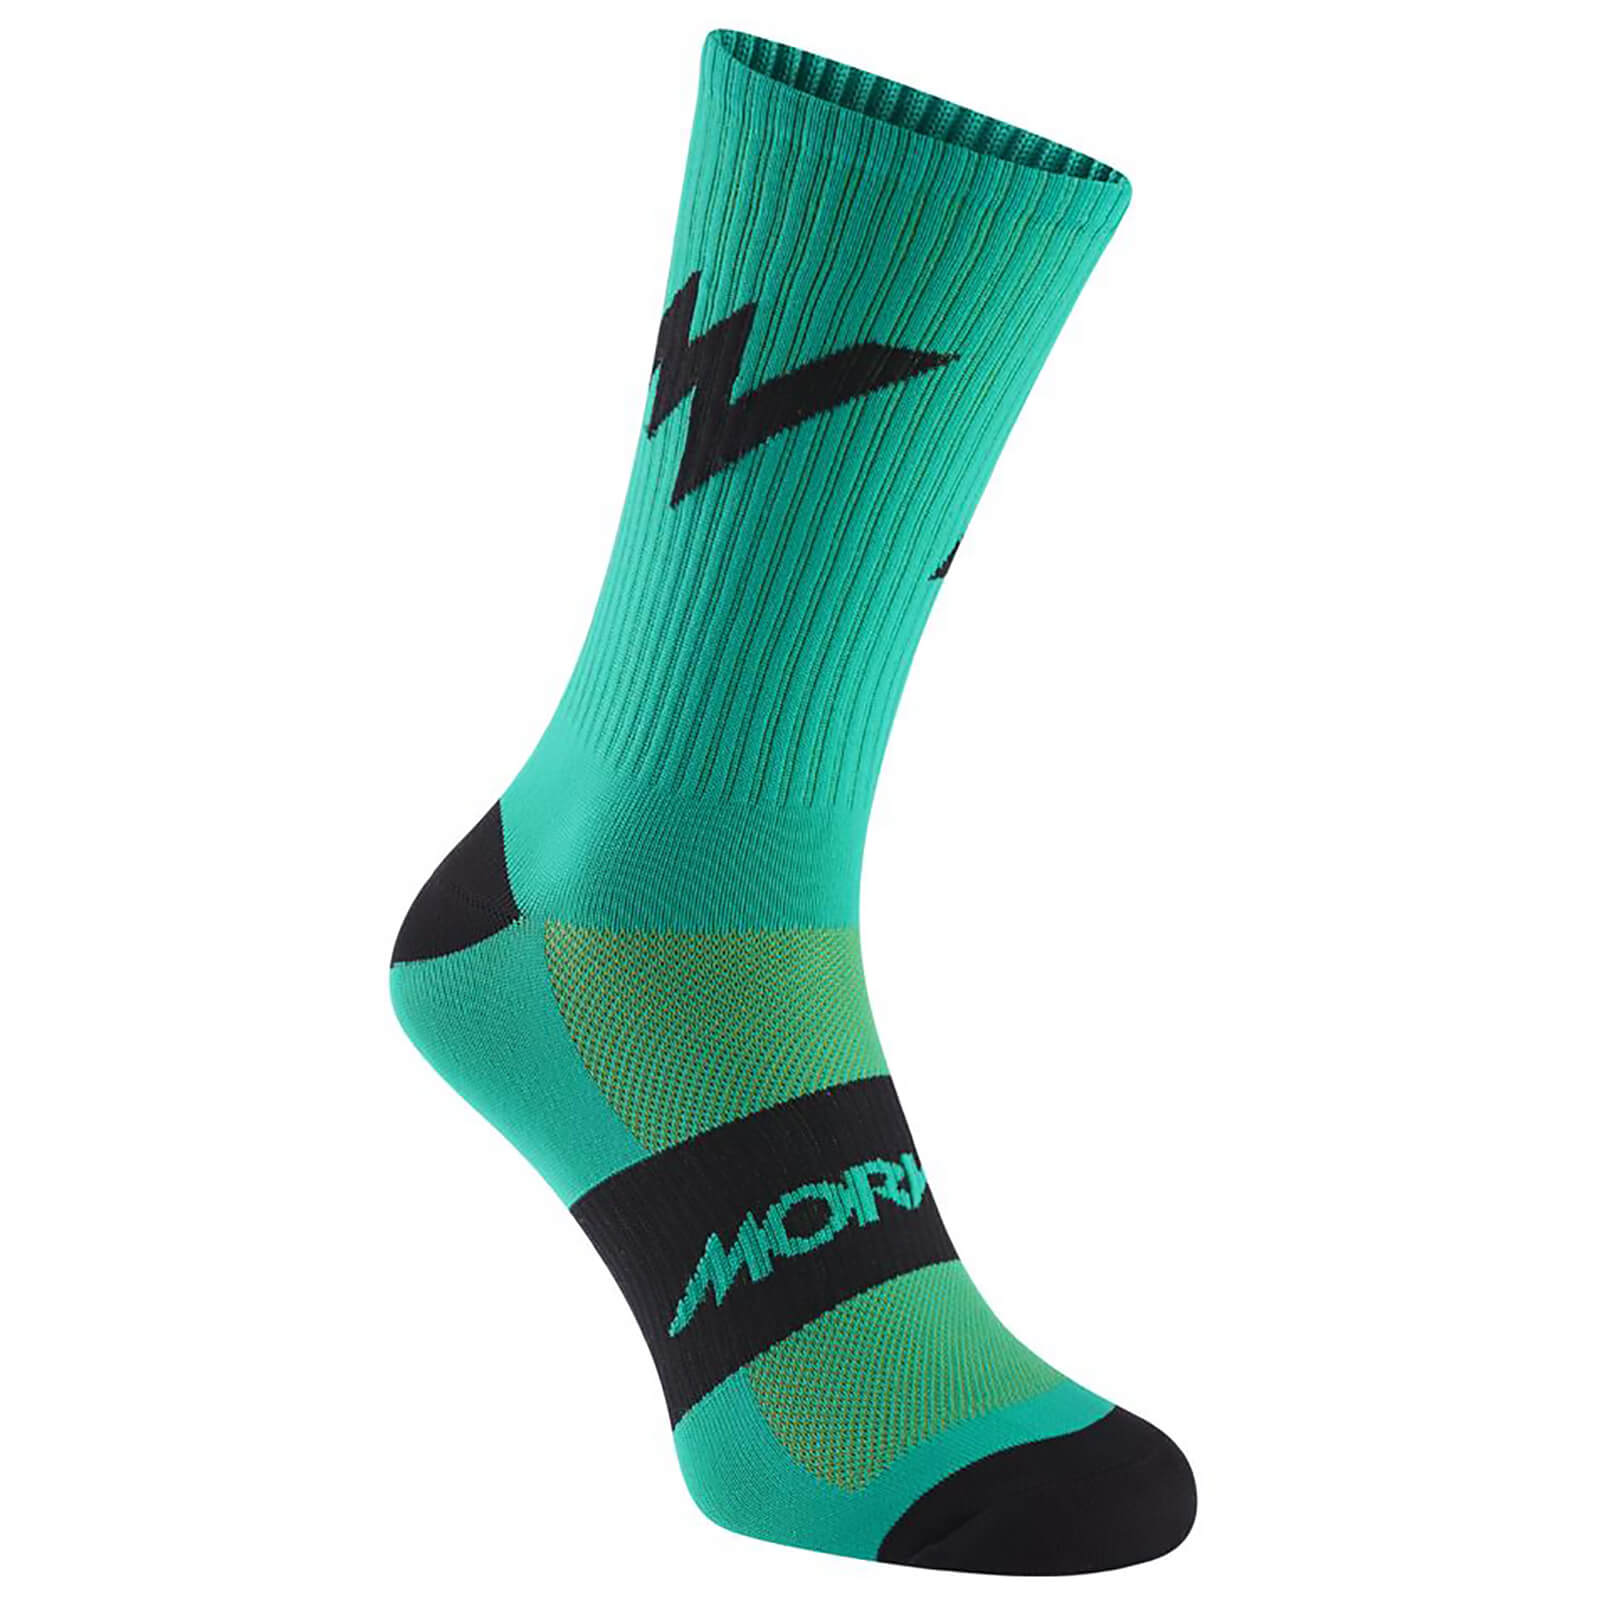 Morvelo Series Emblem Green Socks - S/M